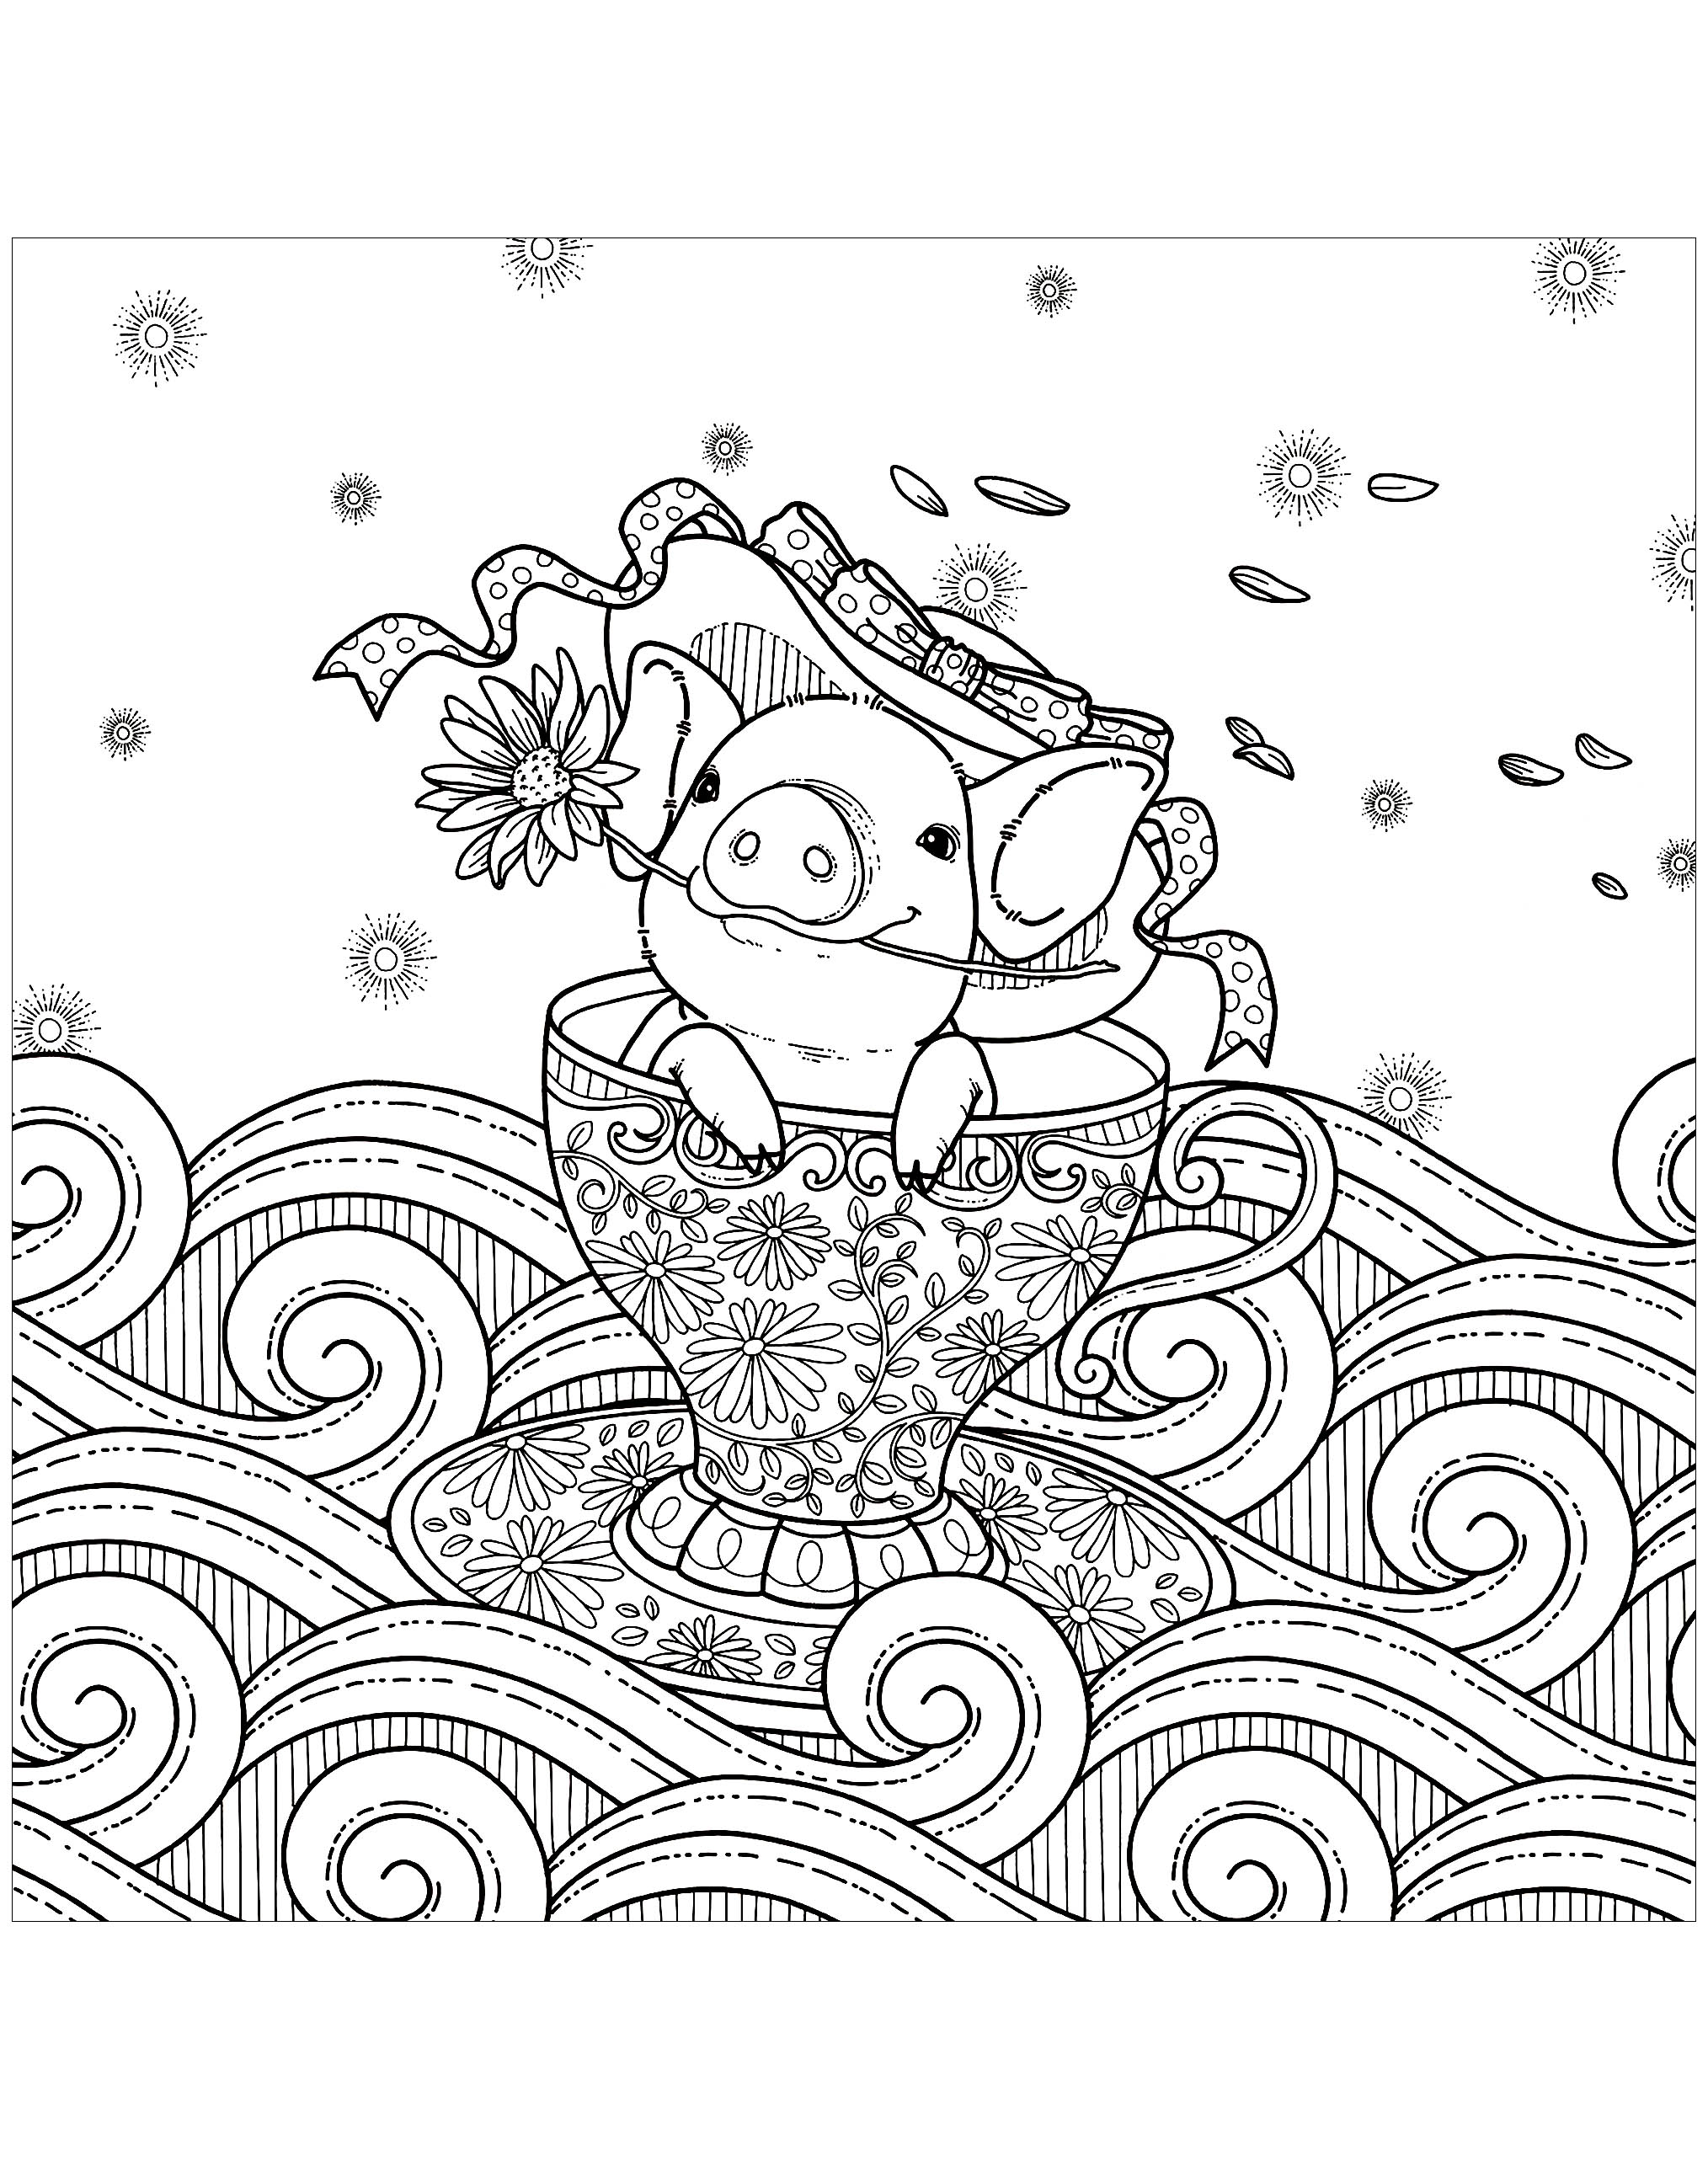 Disegni da colorare per adulti : Maiali - 1, Artista : Kchung   Fonte : 123rf